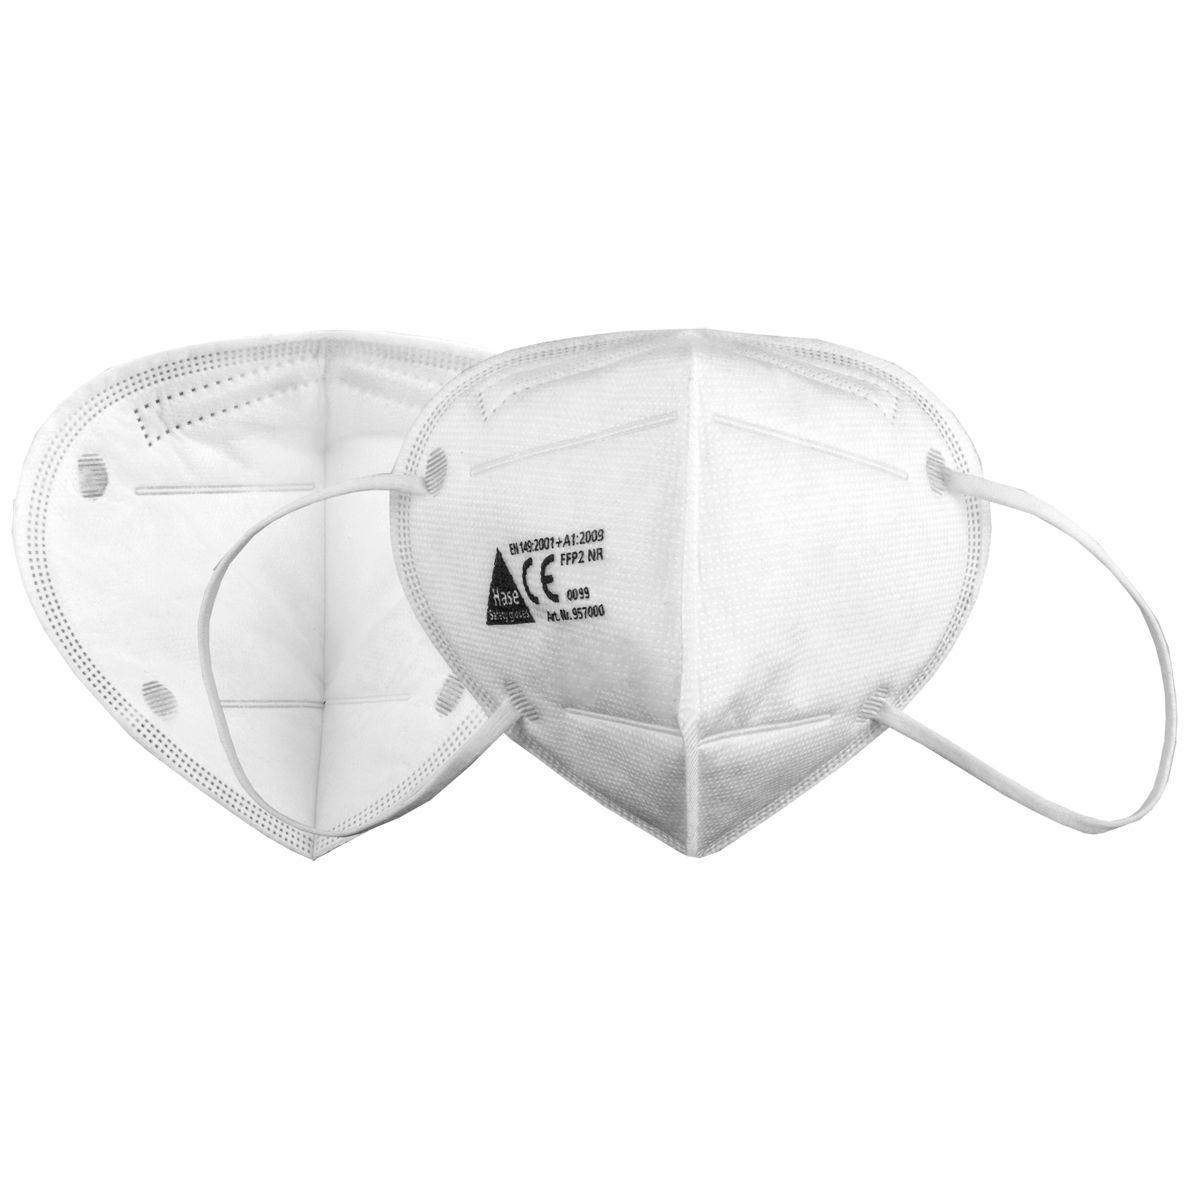 10 Stück Hase Safety FFP2-Masken - Einweg-Staubschutzmaske ohne Ventil - EN 149 - Staubmaske gegen Holz- & Metallstaub